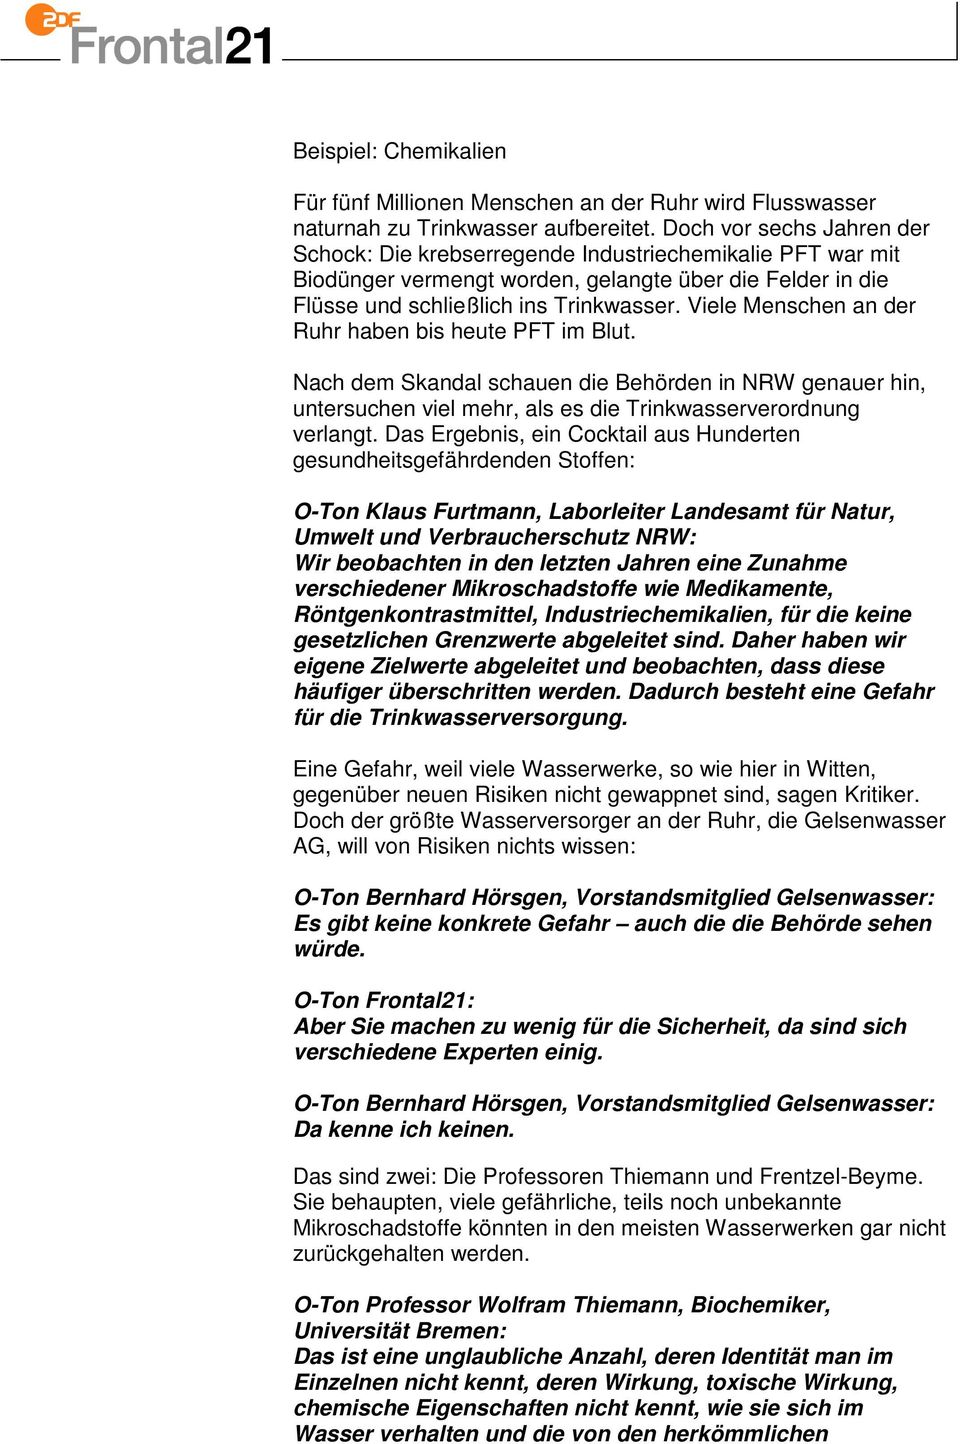 Viele Menschen an der Ruhr haben bis heute PFT im Blut. Nach dem Skandal schauen die Behörden in NRW genauer hin, untersuchen viel mehr, als es die Trinkwasserverordnung verlangt.